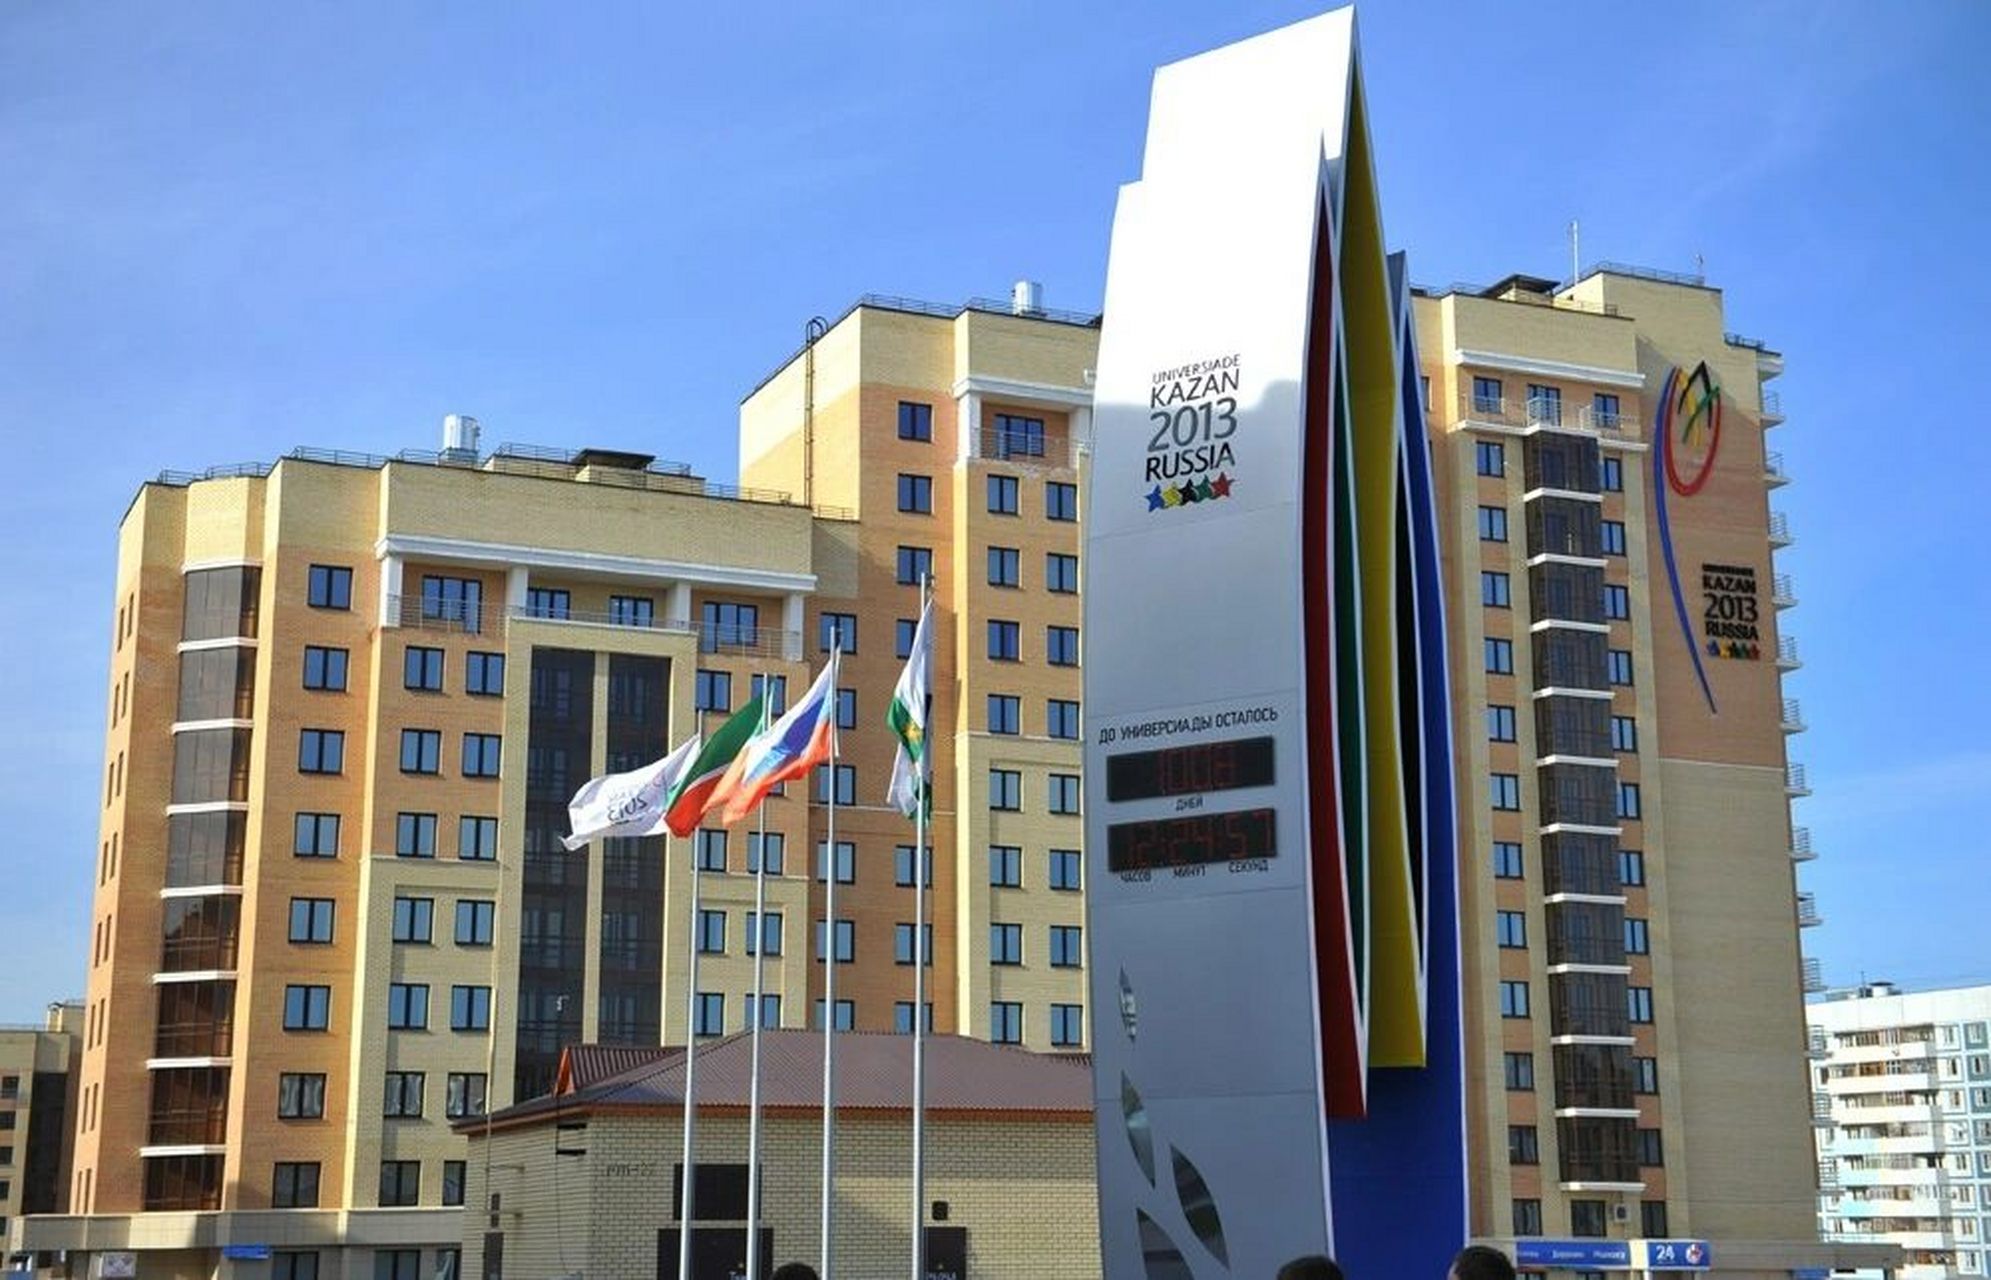 喀山联邦大学 93俄罗斯喀山联邦大学,简称喀山大学,是继莫斯科国立